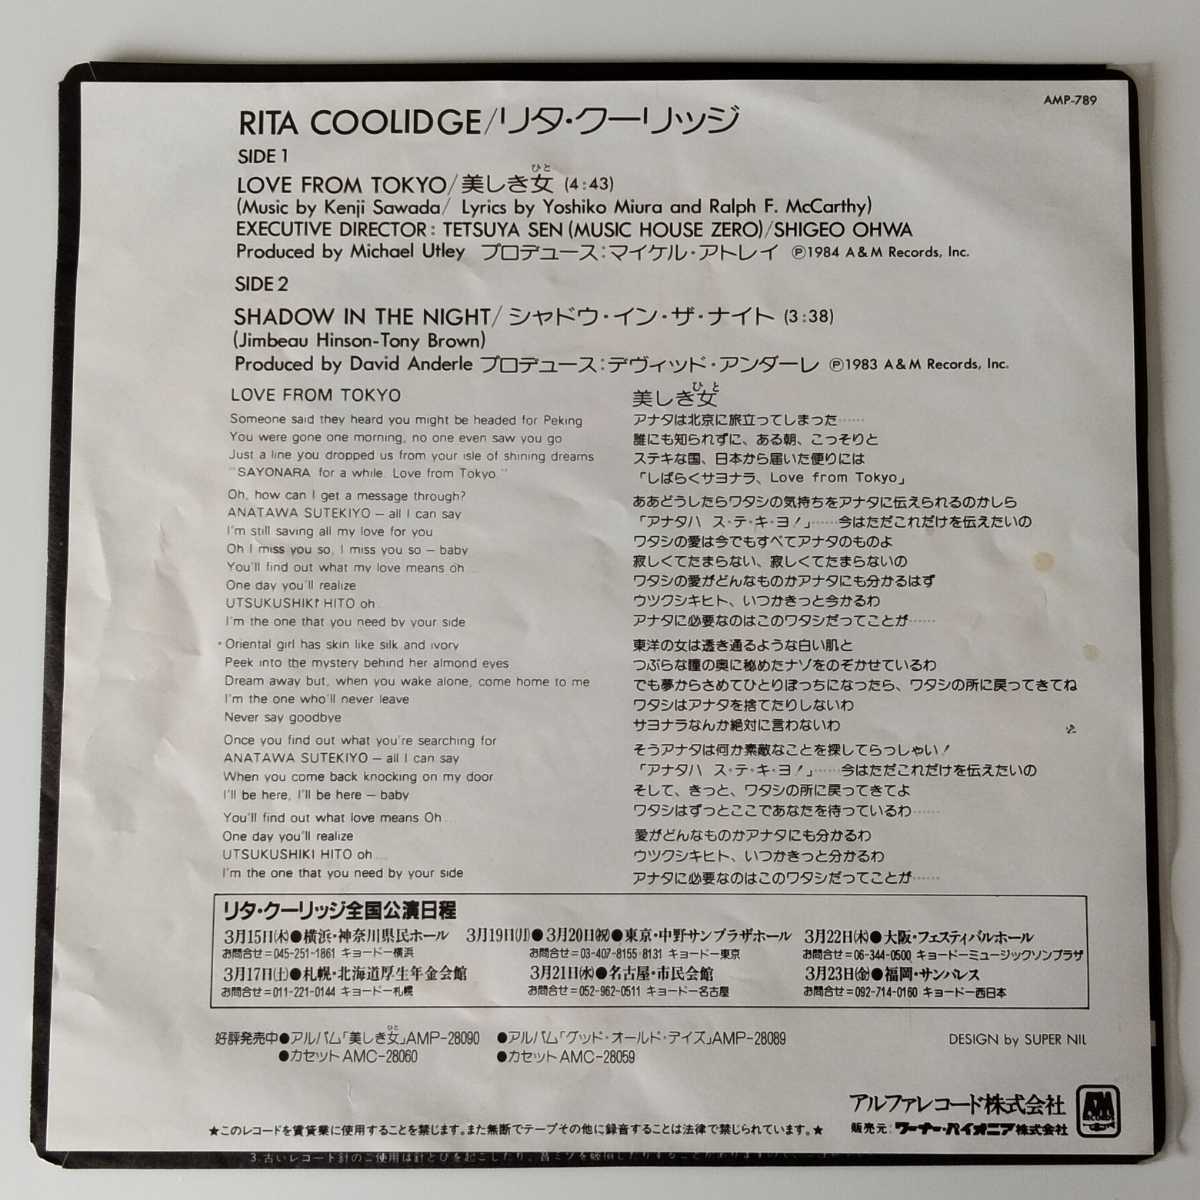 【7inch】RITA COOLIDGE / LOVE FROM TOKYO (AMP-789) リタ・クーリッジ / 美しき女 / シャドウ・イン・ザ・ナイト EP_画像2